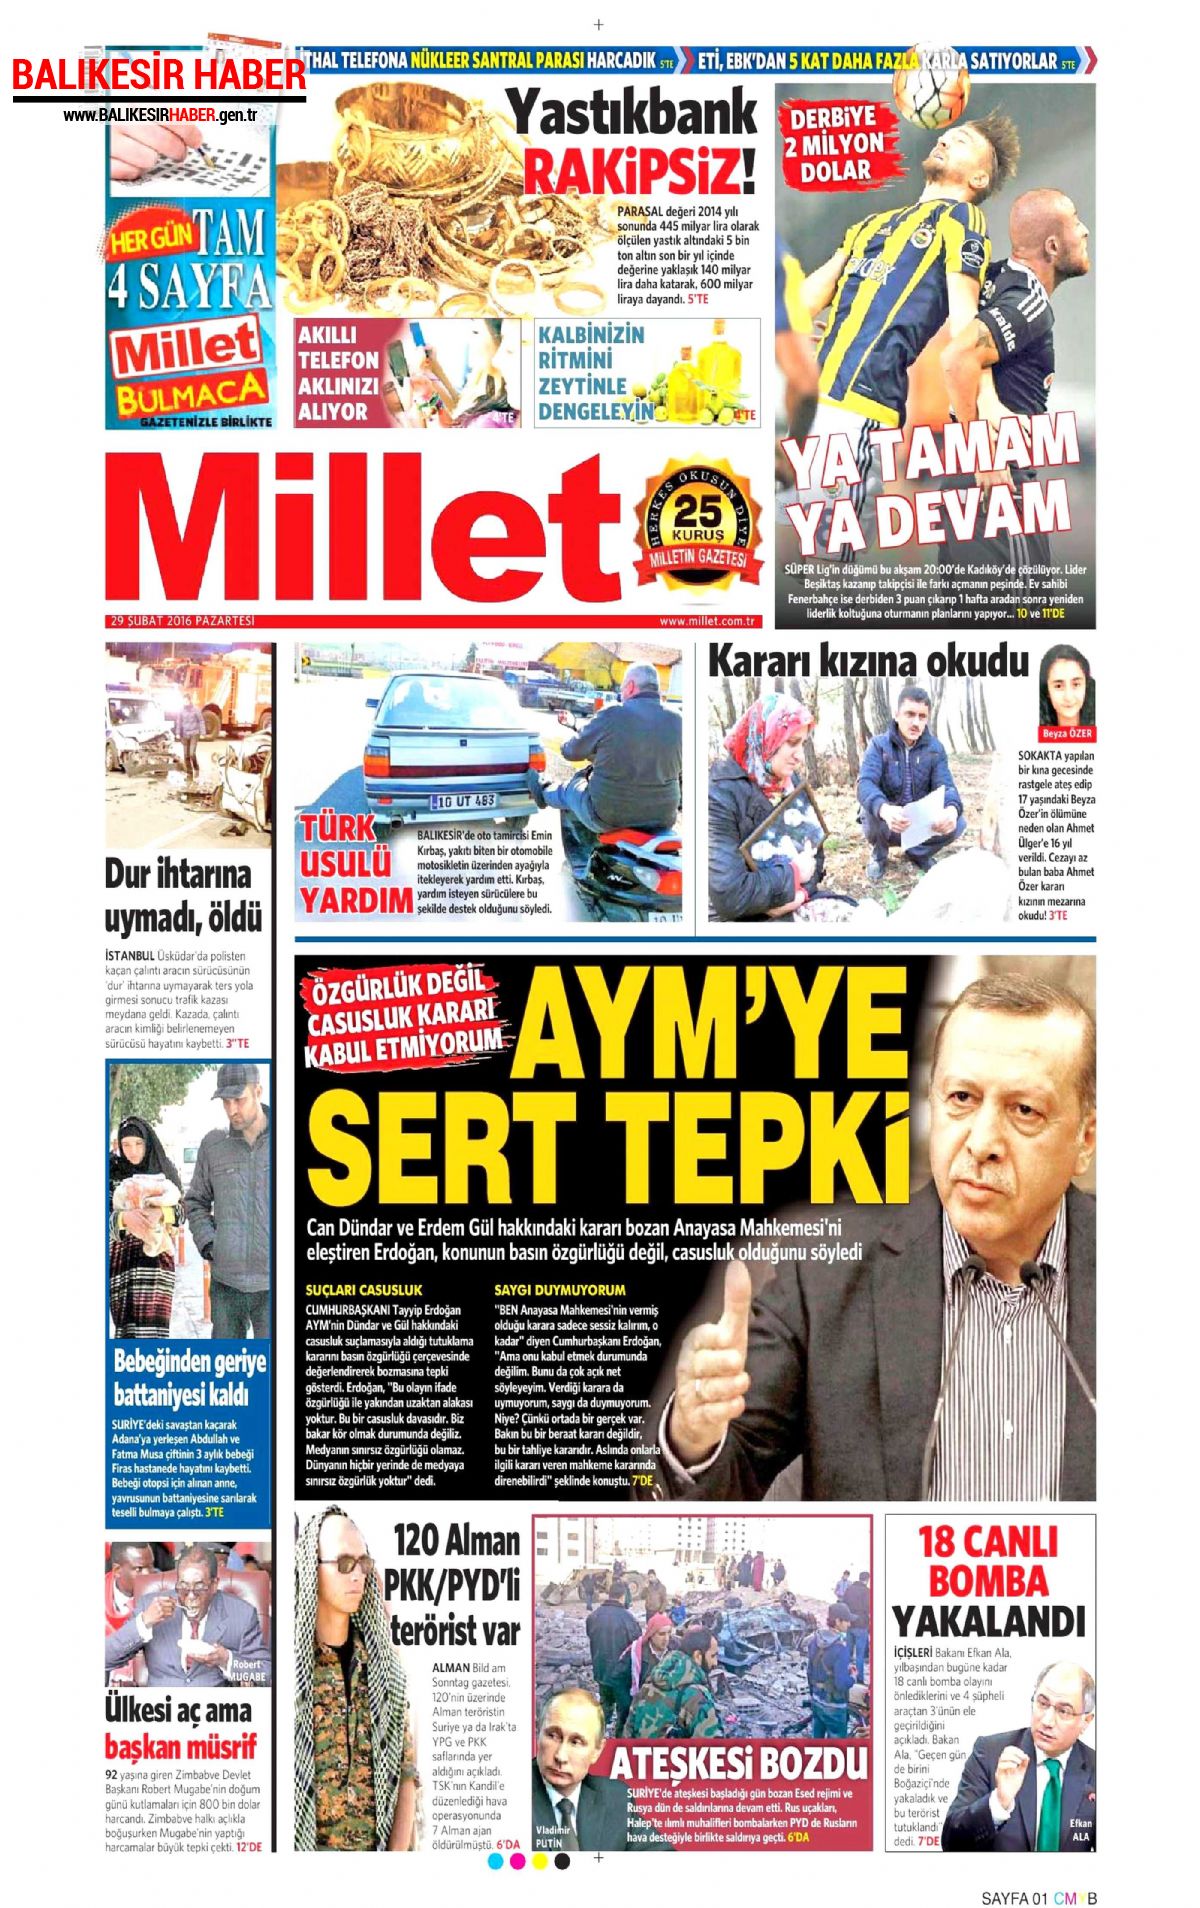 Millet Gazetesi 18 Nisan 2016 Gazete Manşetleri